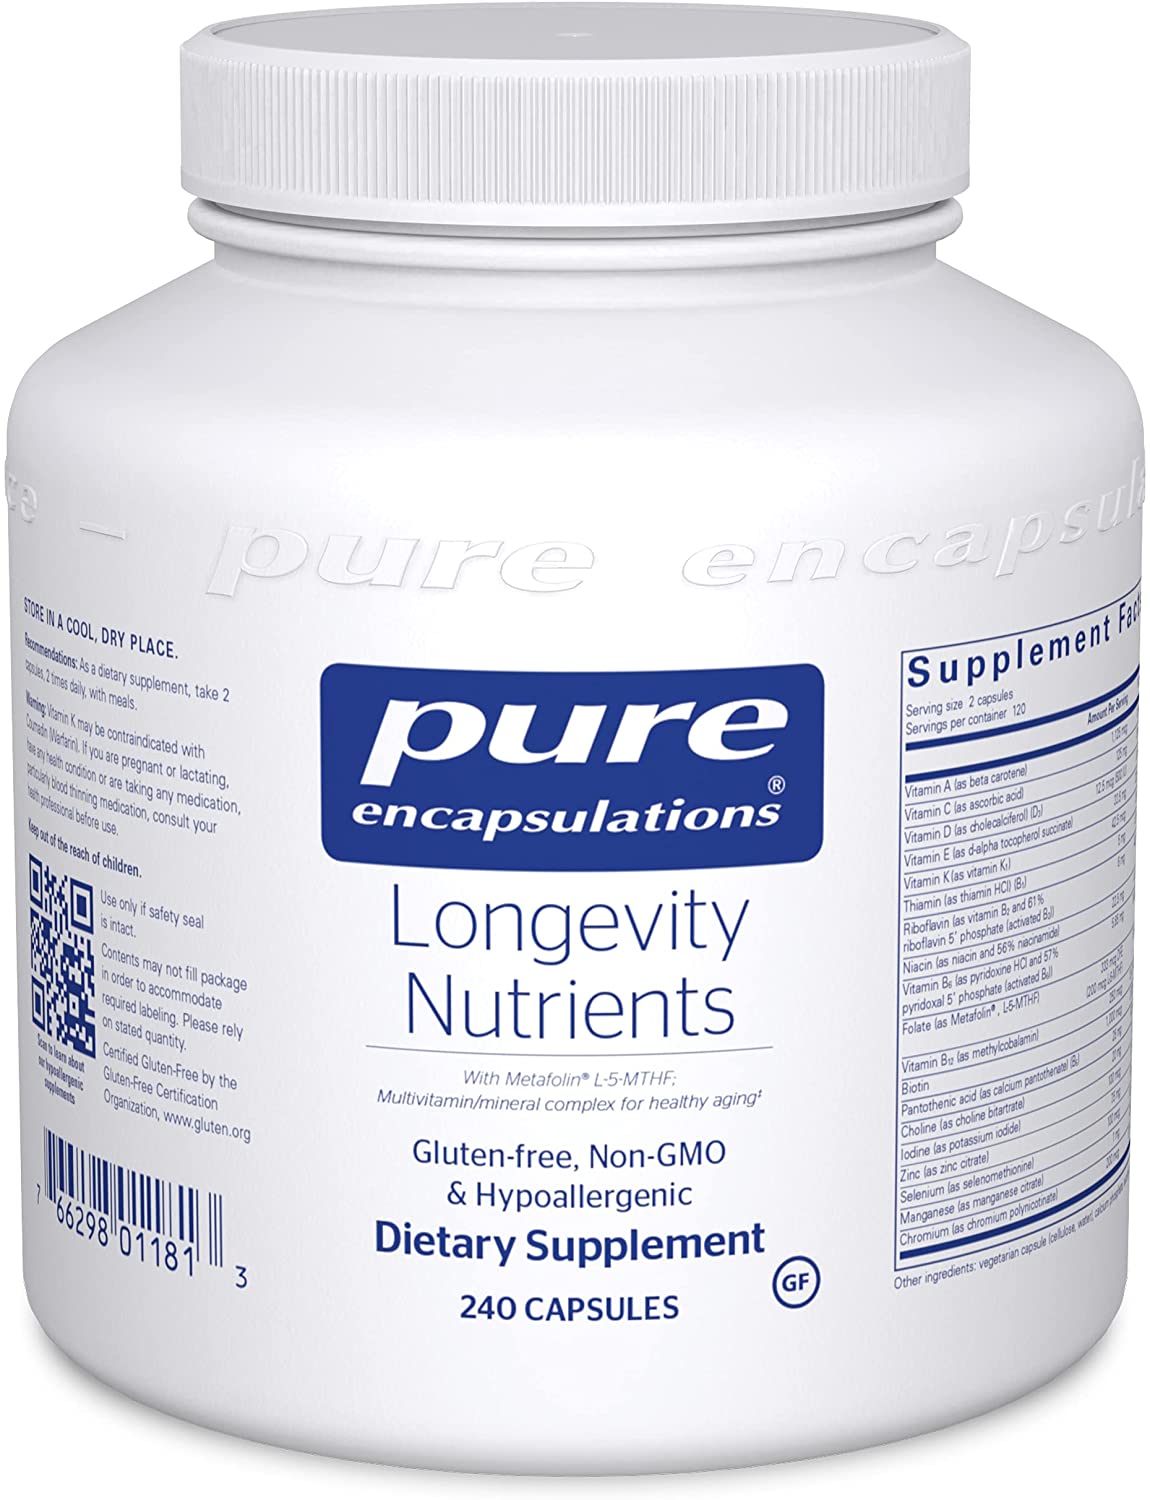 Longevity-Nutrients-240s